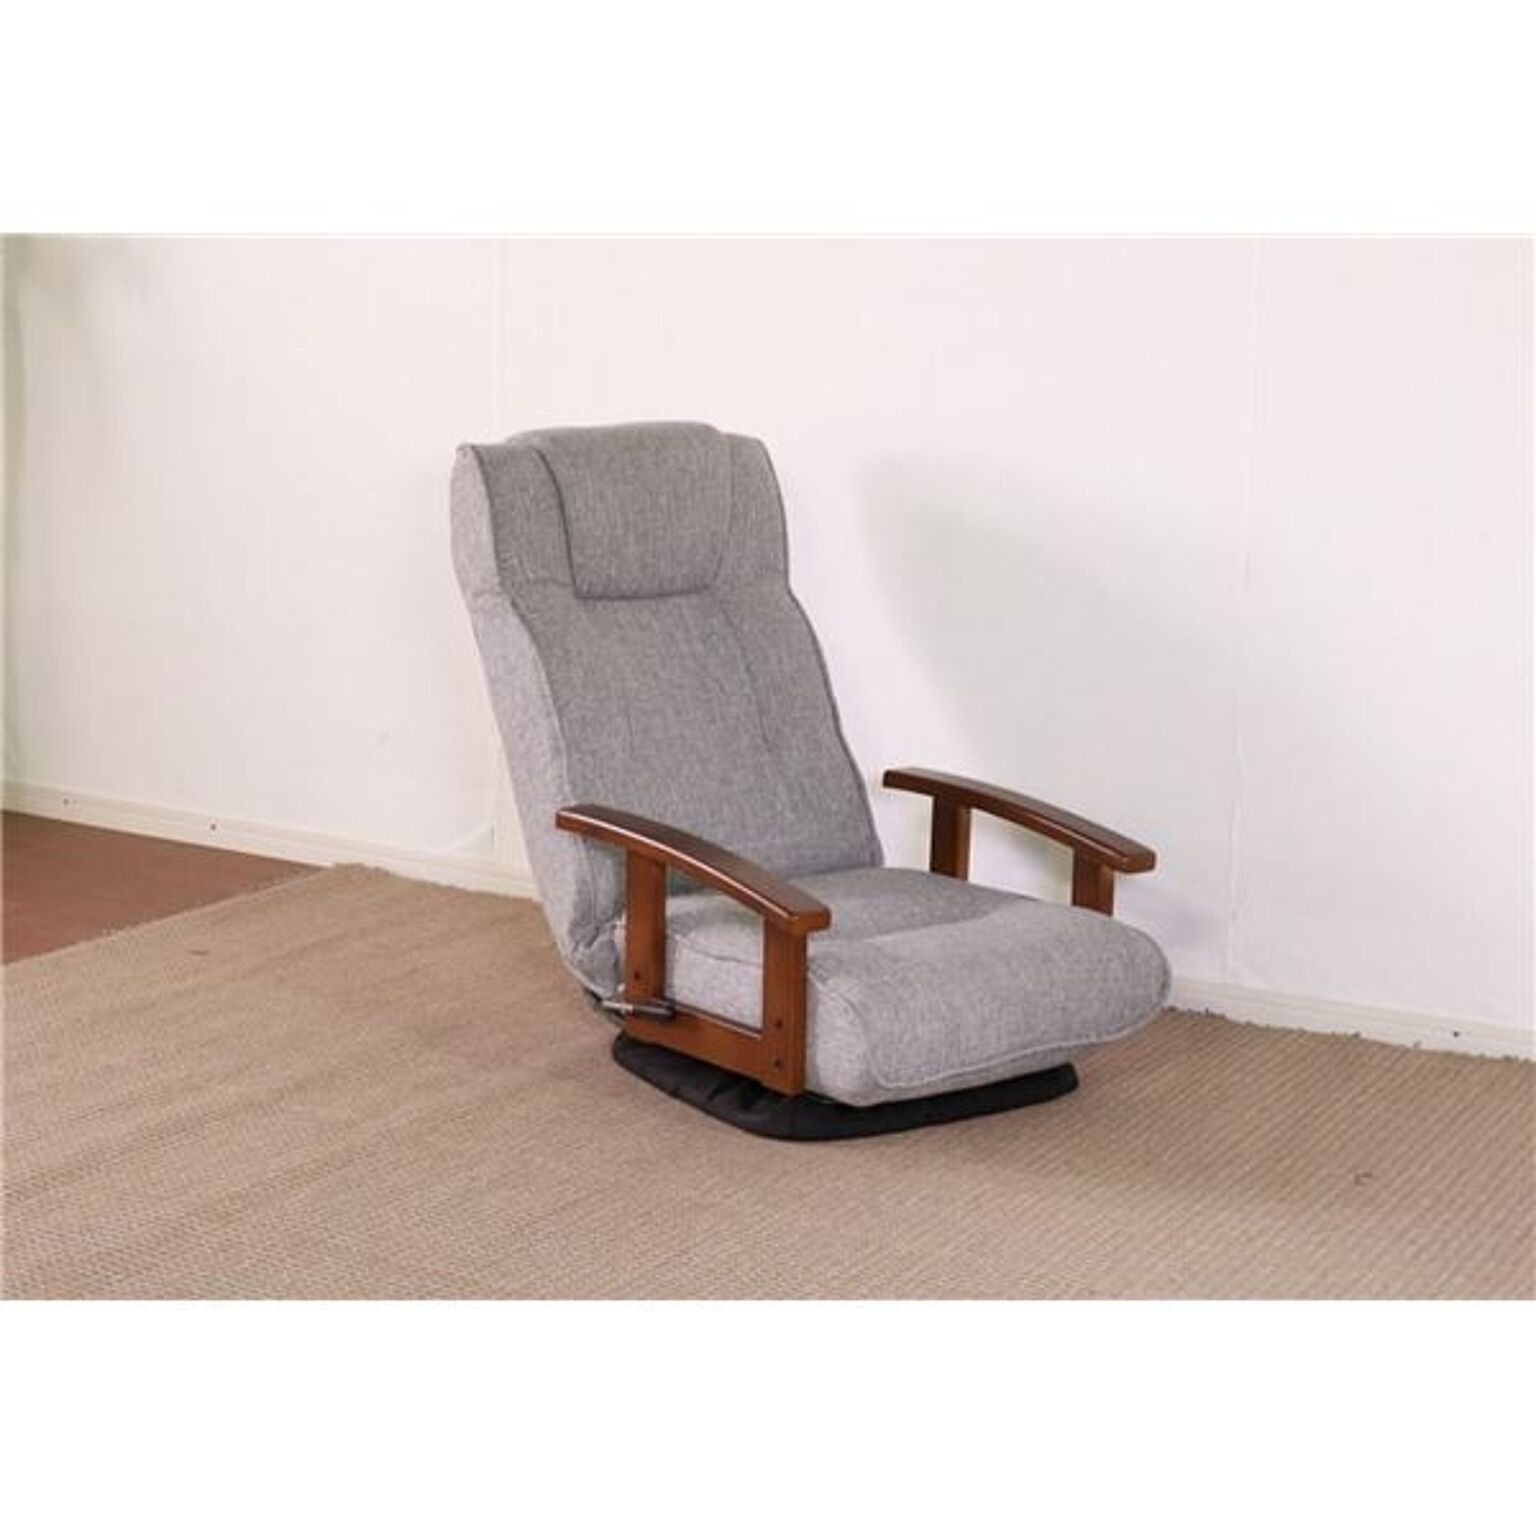 回転式 座椅子/パーソナルチェア 【グレー】 57×67×75cm 木製 肘付き リクライニング式 組立品 〔リビング〕